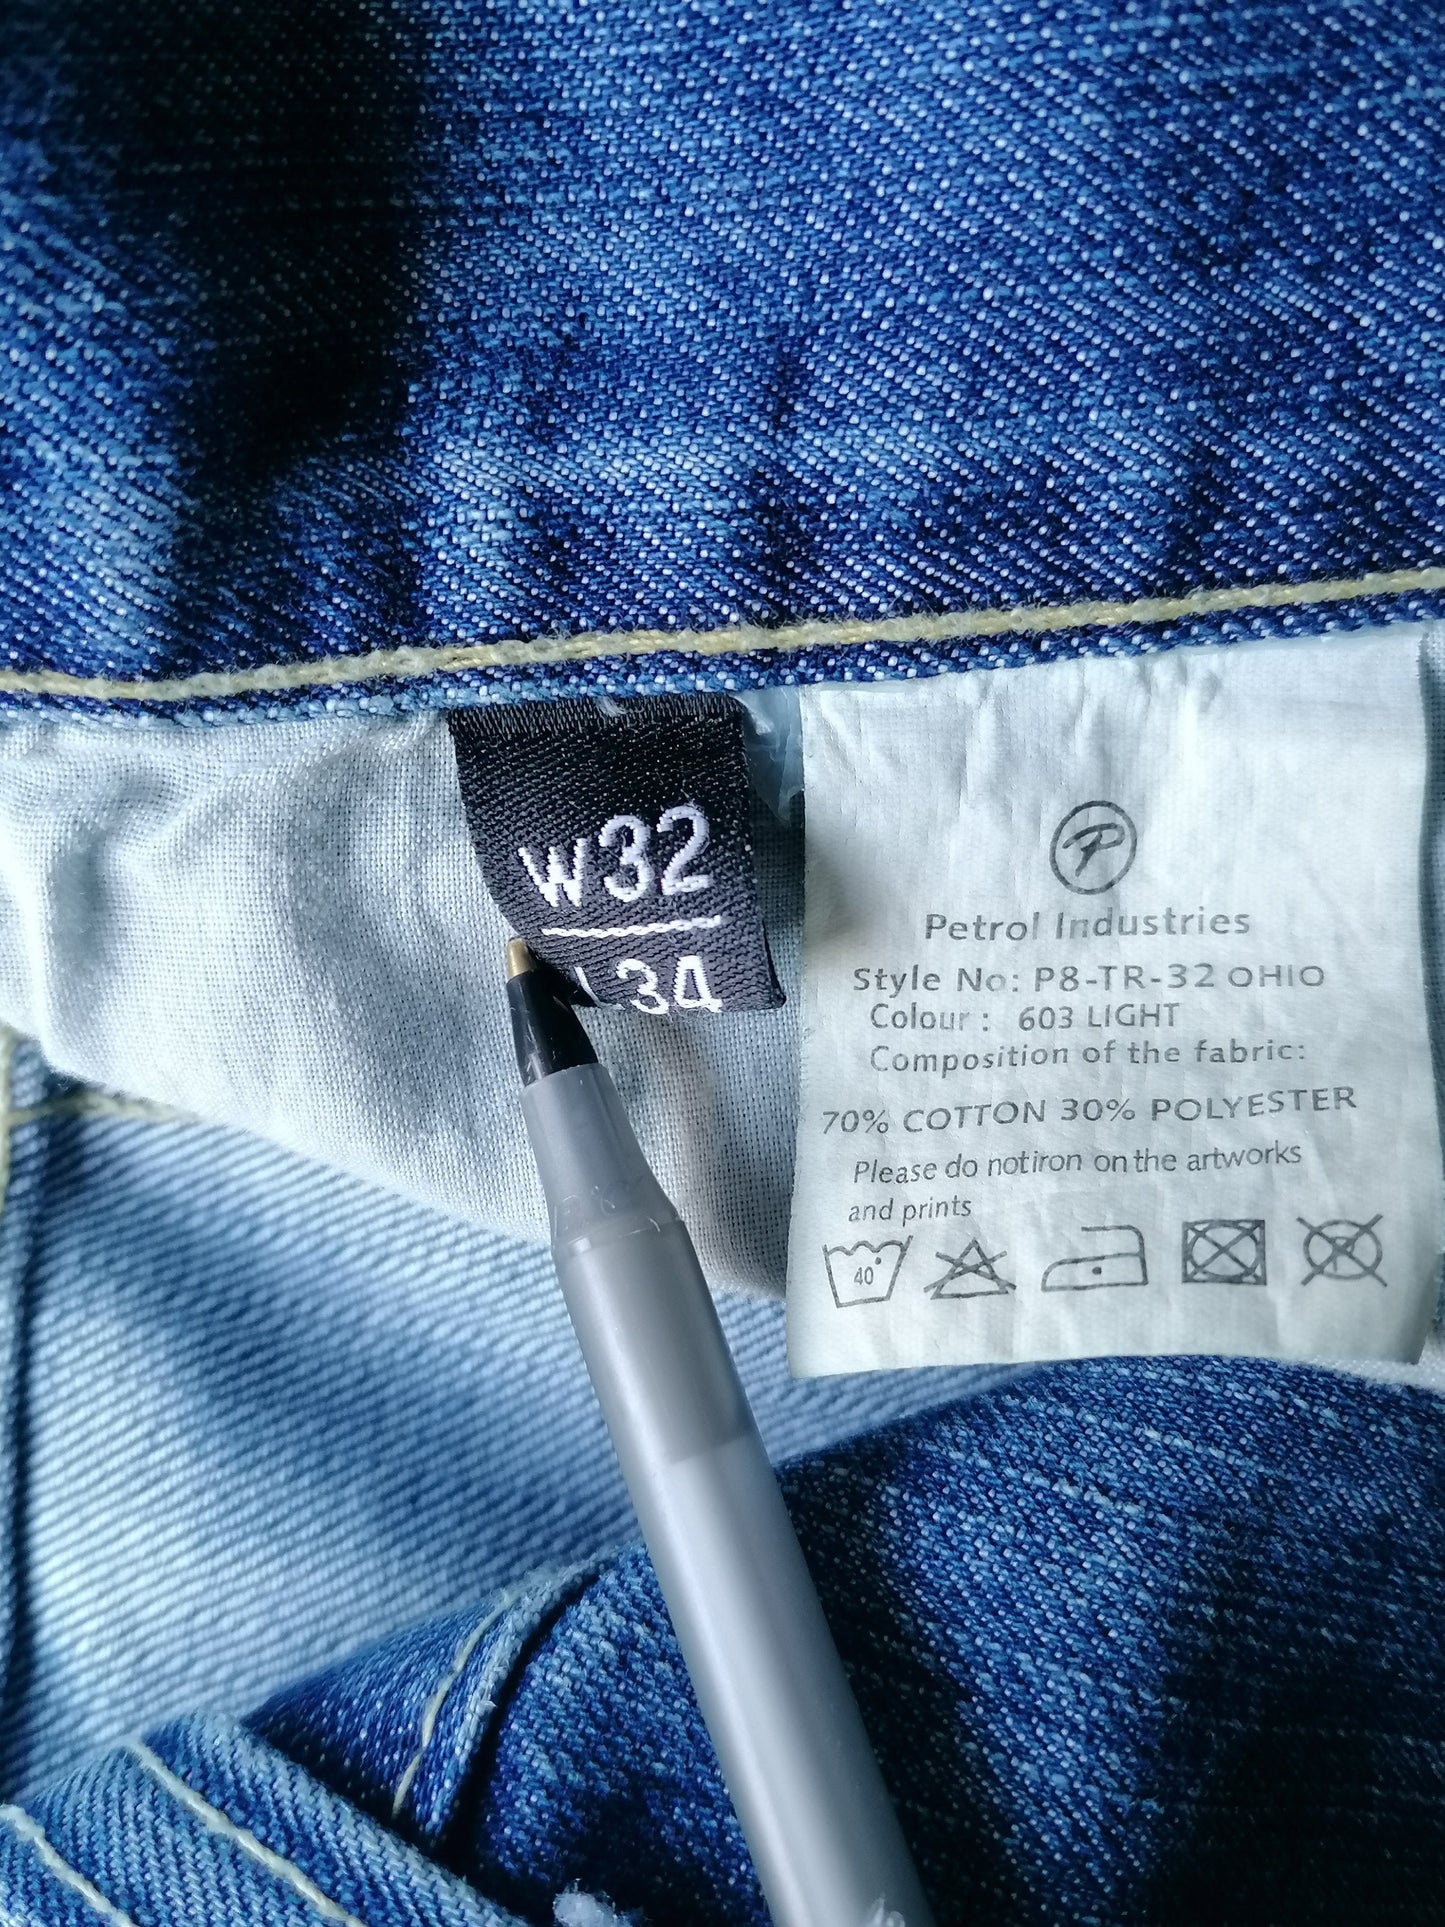 Jeans a benzina. Blu colorato. Taglia W32 - 30. I pantaloni sono stati abbreviati.